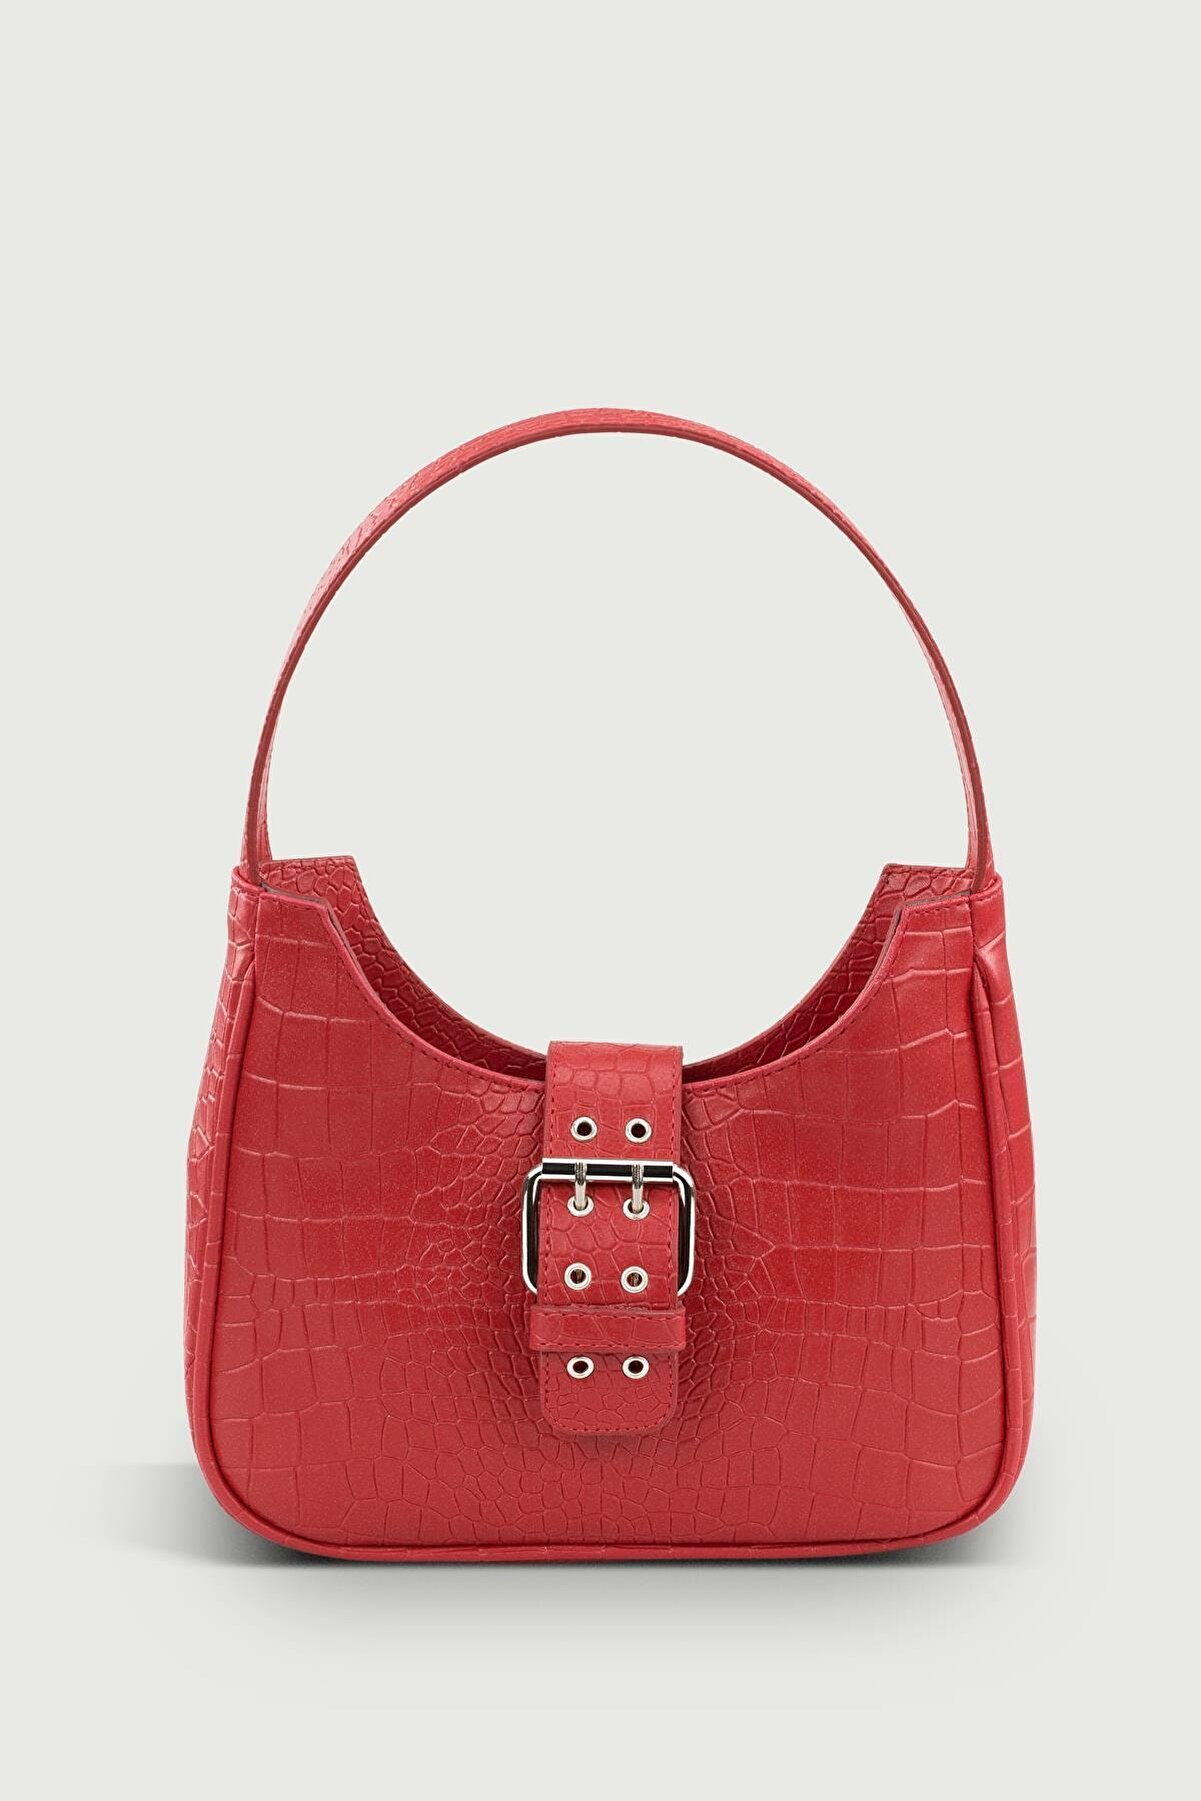 Housebags Kadın Kırmızı Tokalı Desenli Çanta 209